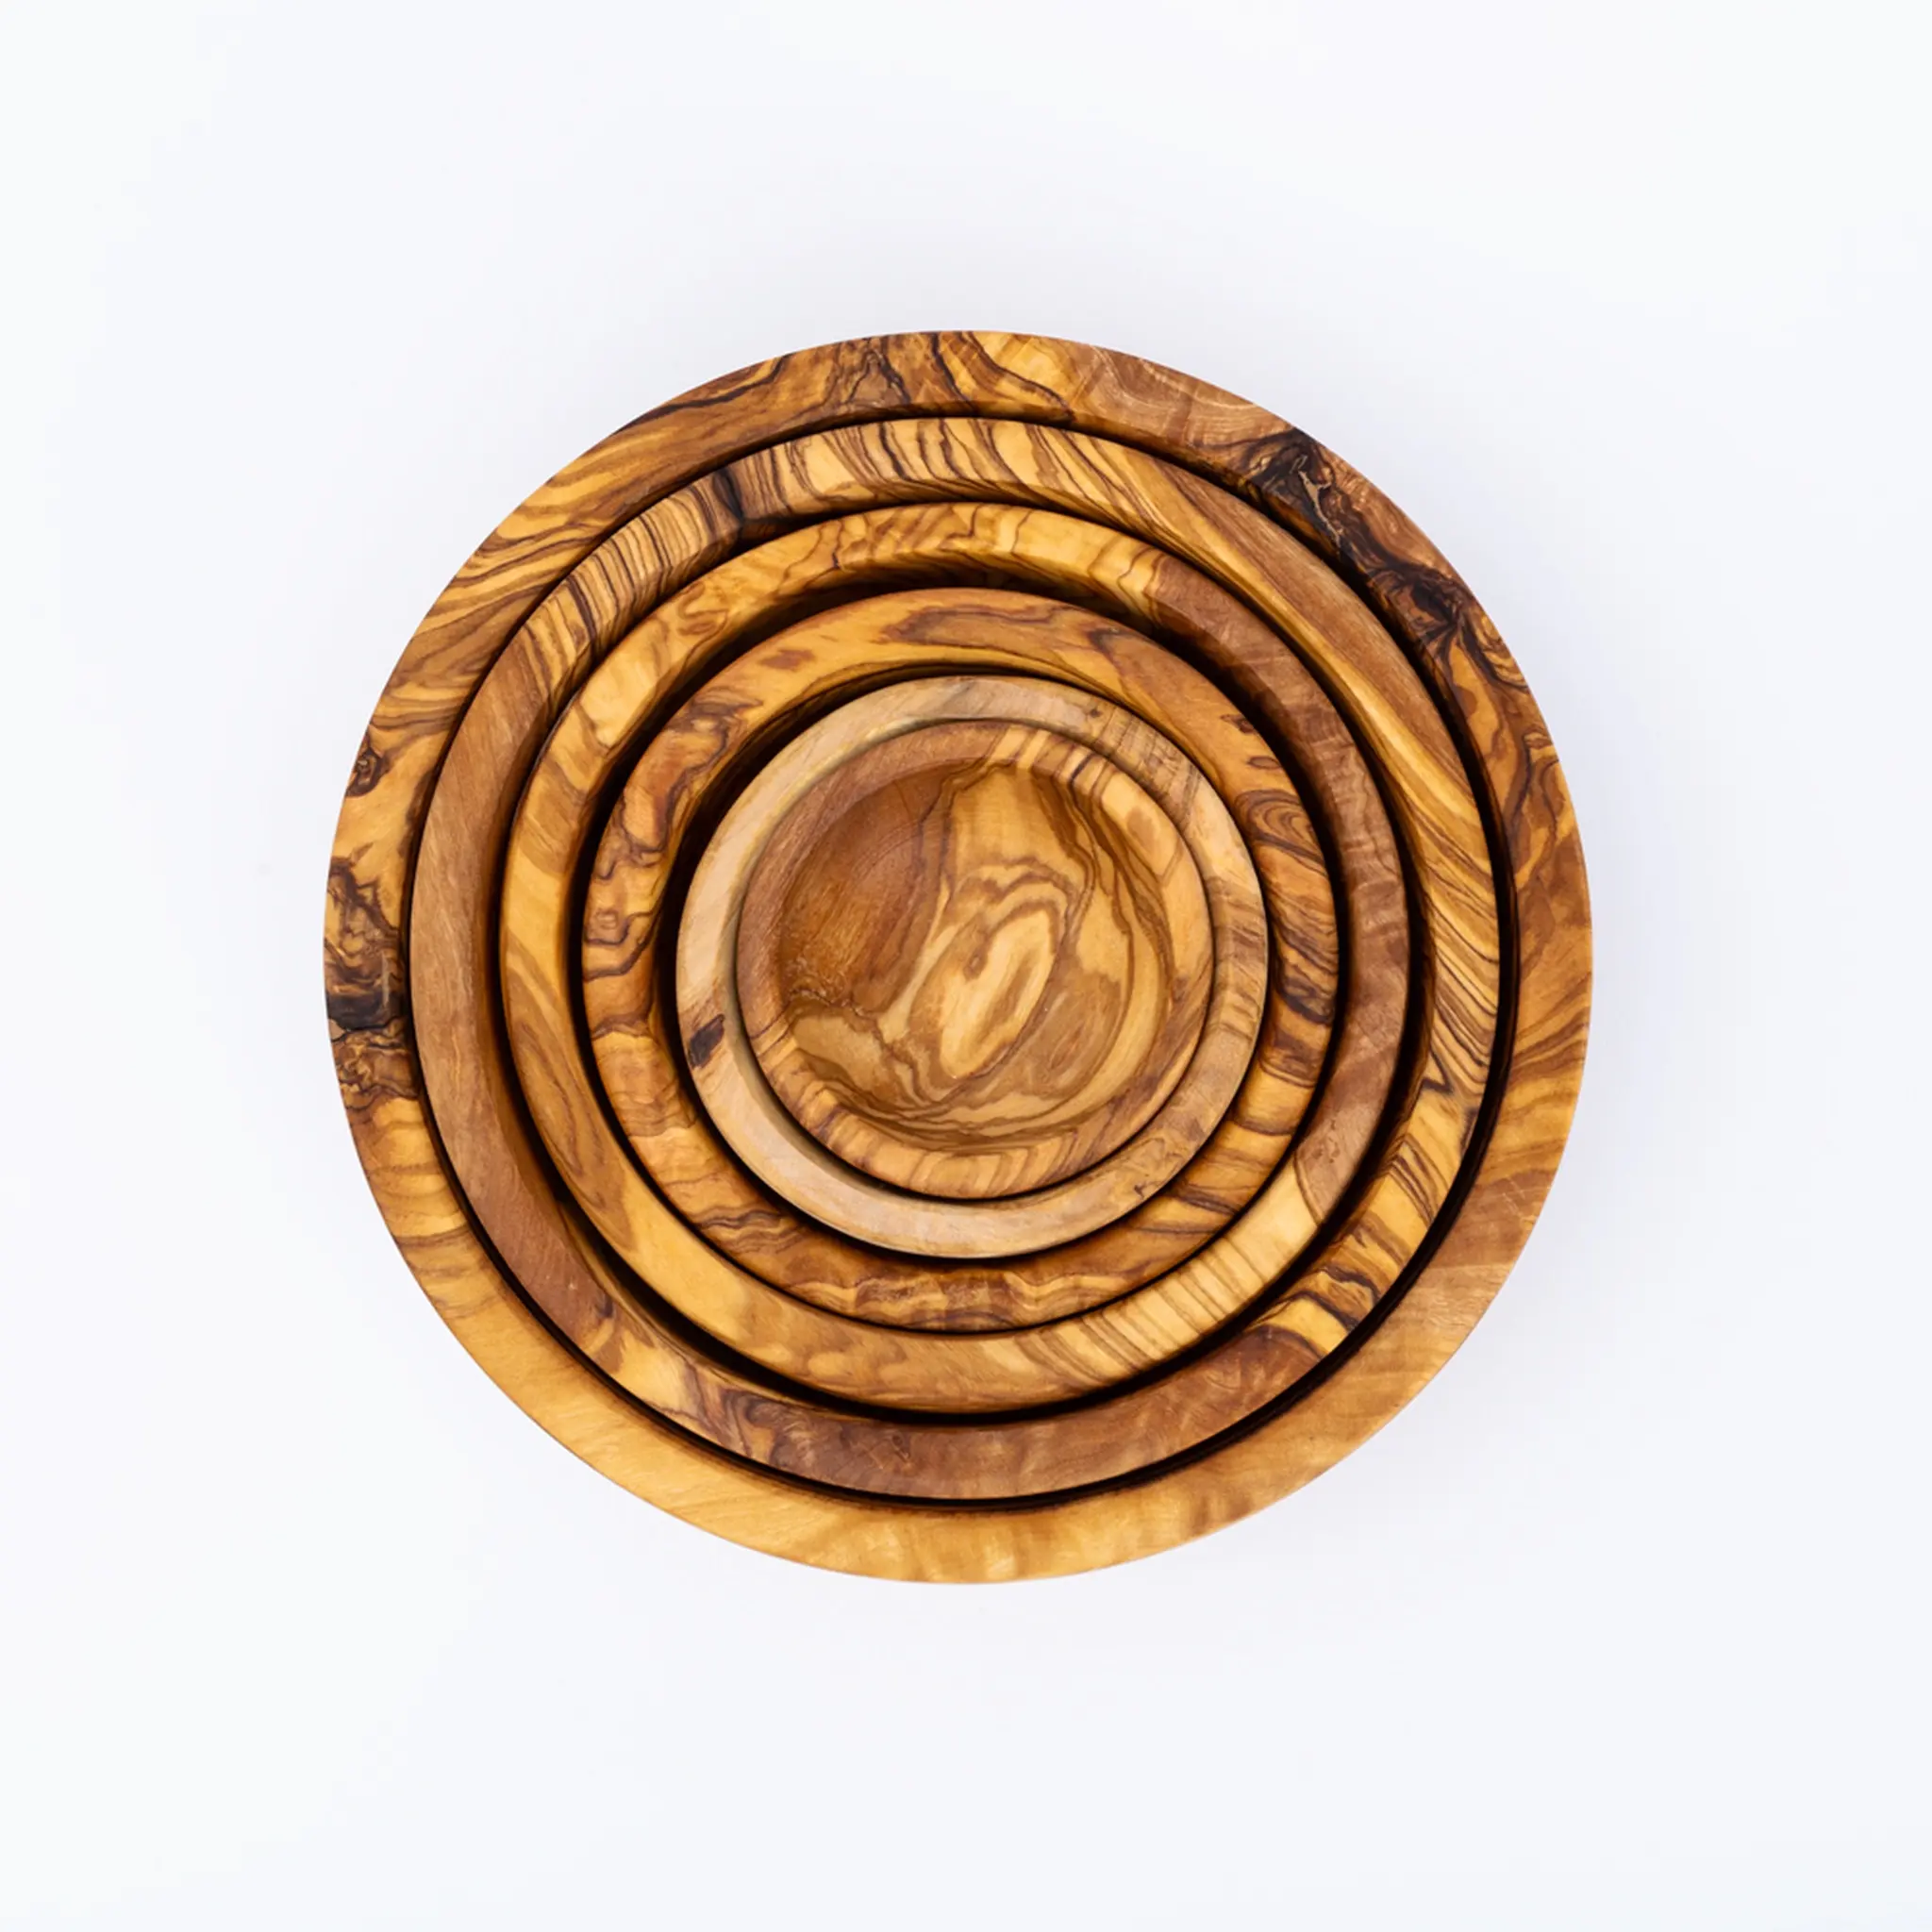 ชามไม้เป็นองค์ประกอบสำคัญในการทำน้ำสลัดโฮมเมดที่ครอบครัวของคุณต่อสู้ที่โต๊ะอาหารเย็น